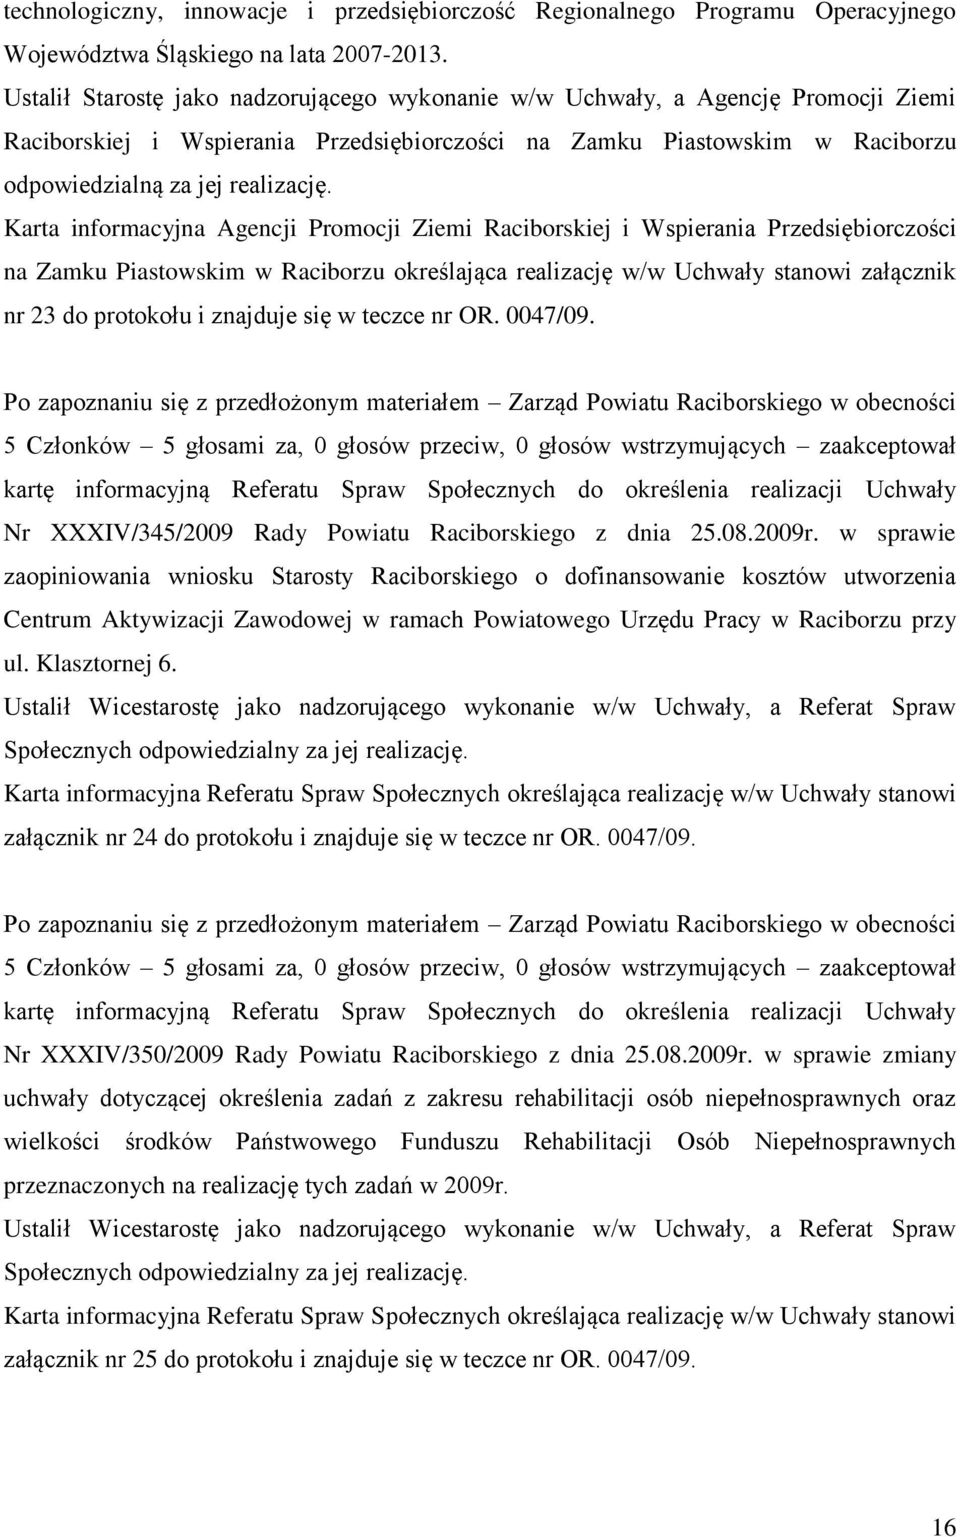 Karta informacyjna Agencji Promocji Ziemi Raciborskiej i Wspierania Przedsiębiorczości na Zamku Piastowskim w Raciborzu określająca realizację w/w Uchwały stanowi załącznik nr 23 do protokołu i